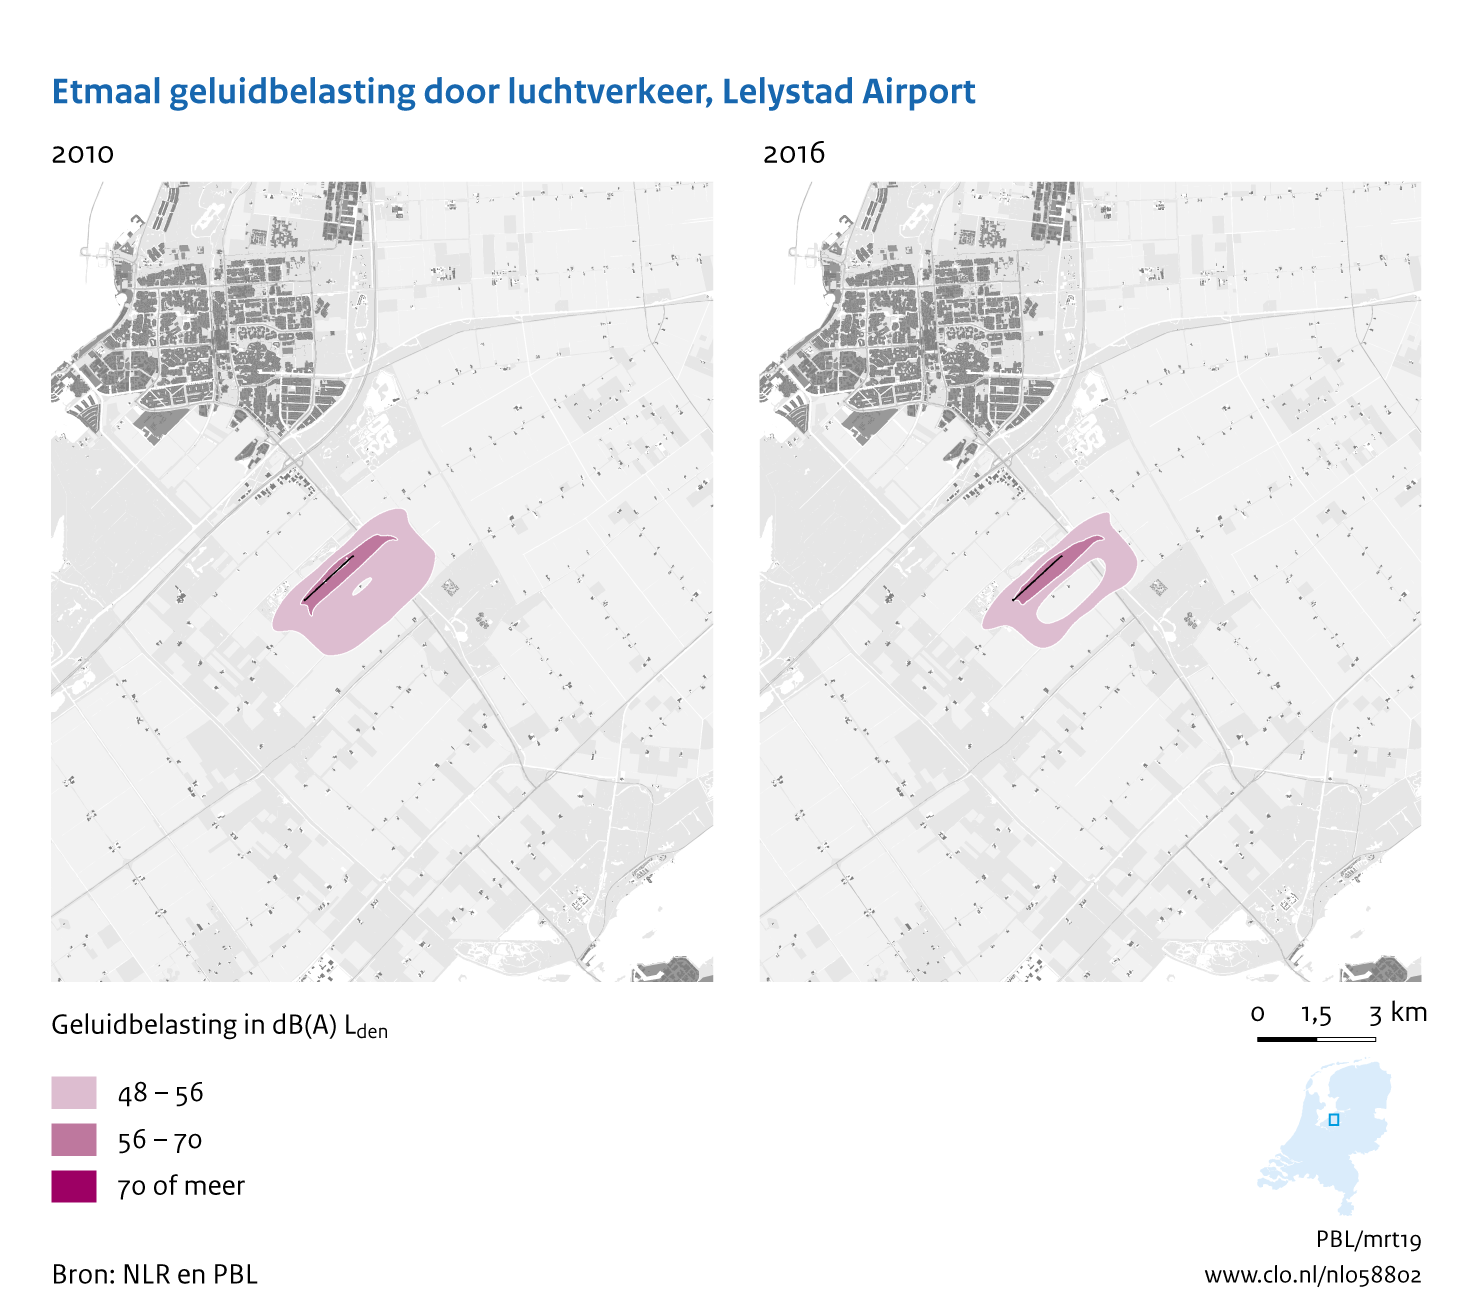 Figuur Etmaal geluidbelasting door luchtvaart, Lelystad Airport, 2010-2016. In de rest van de tekst wordt deze figuur uitgebreider uitgelegd.